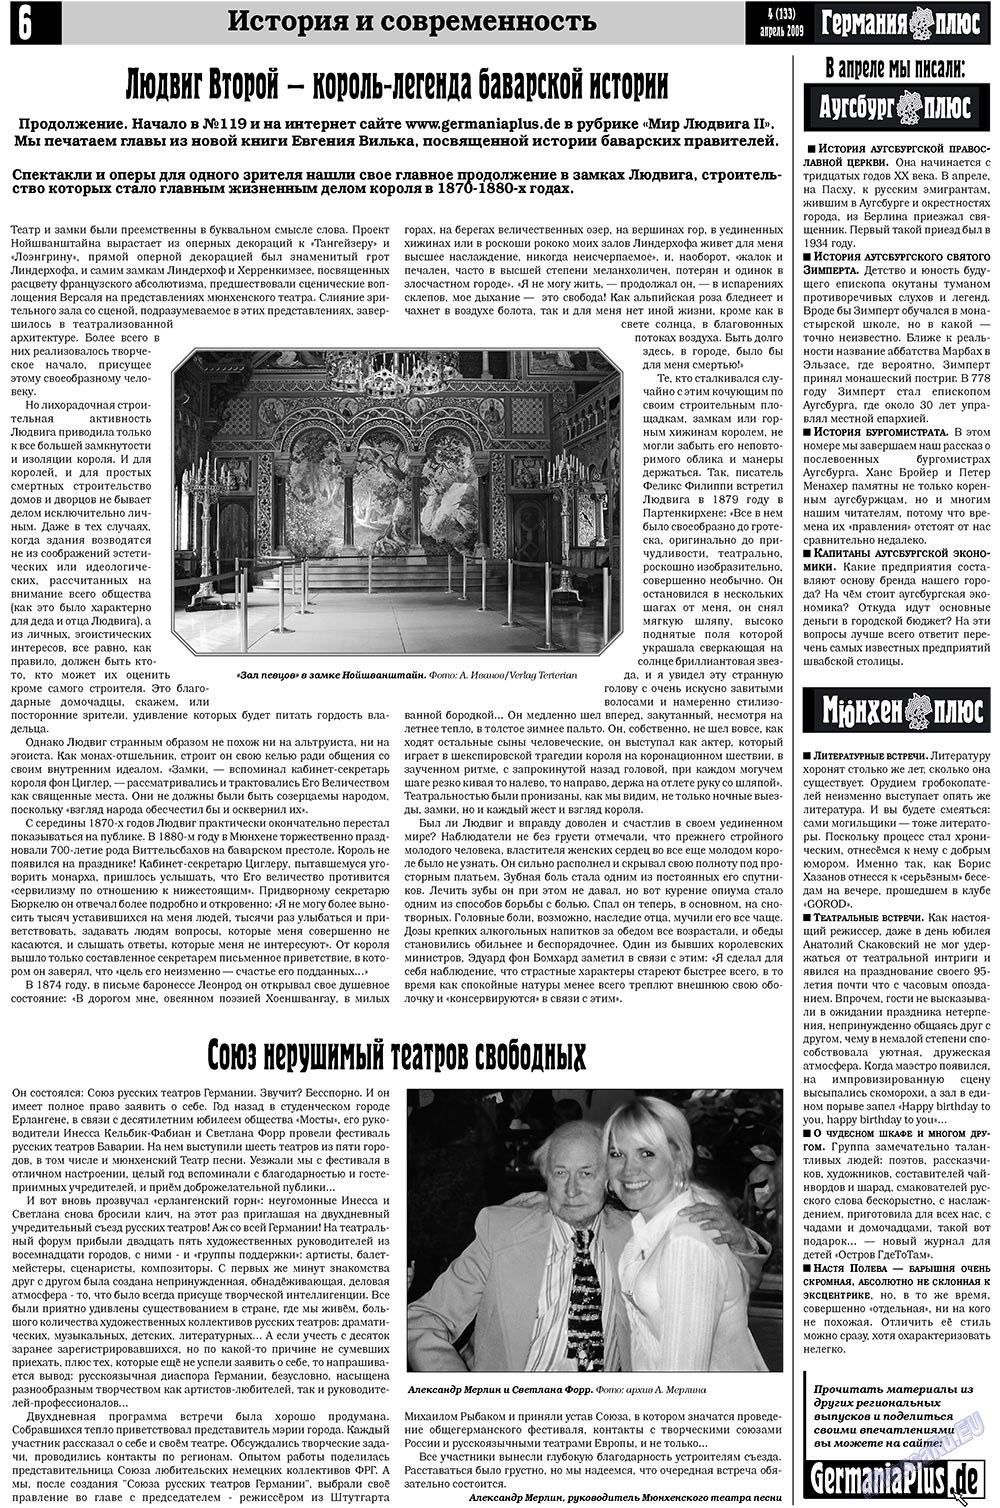 Германия плюс (газета). 2009 год, номер 4, стр. 6